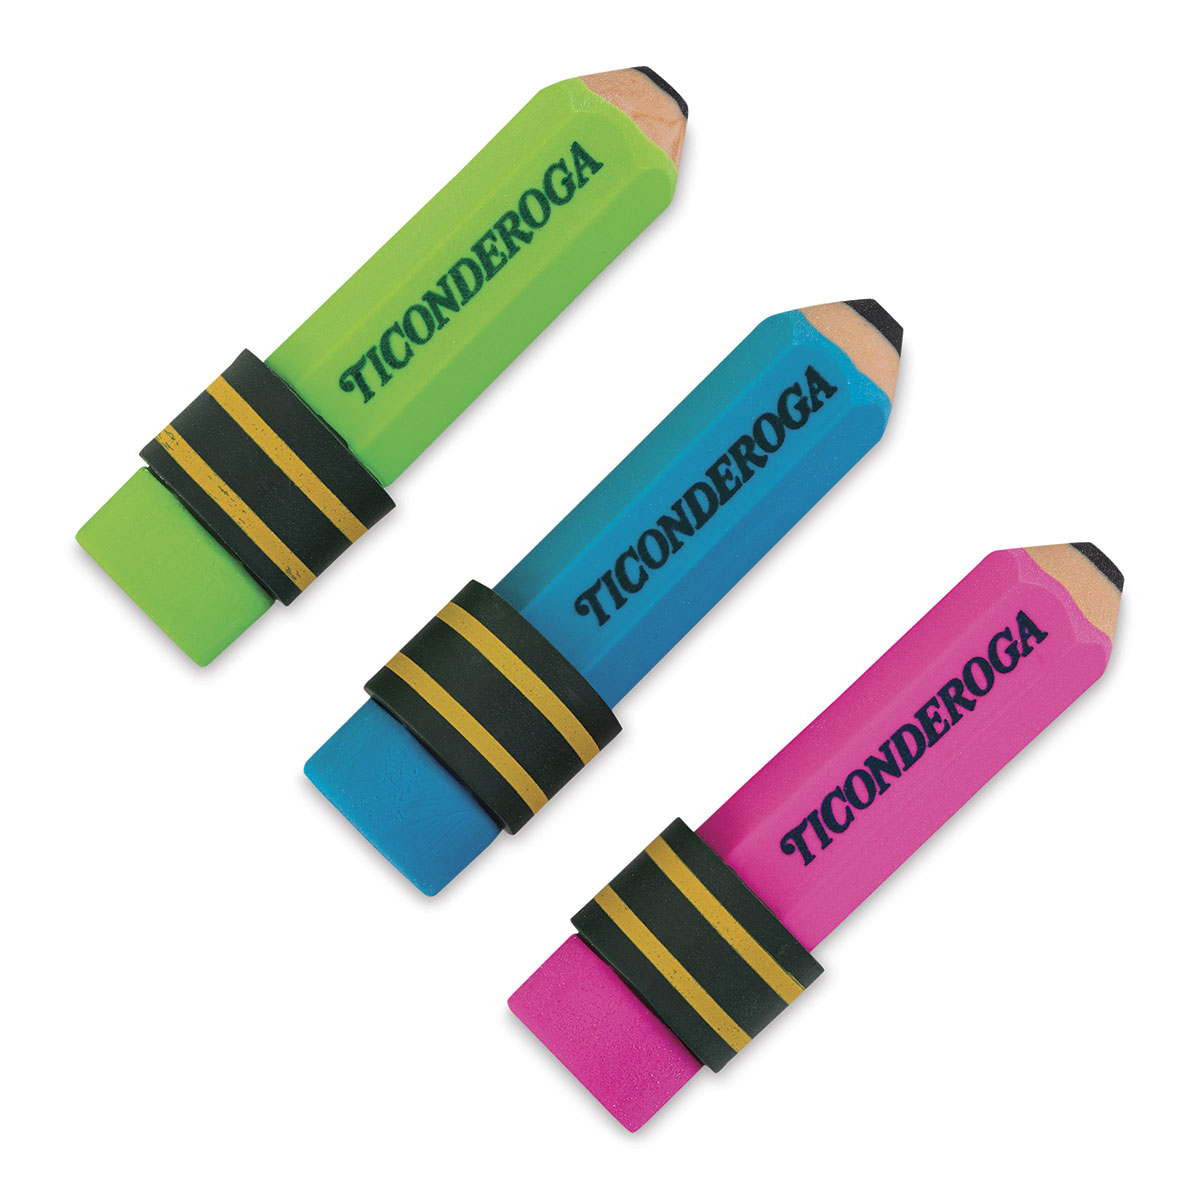 Dixon Ticonderoga Pencil Sets